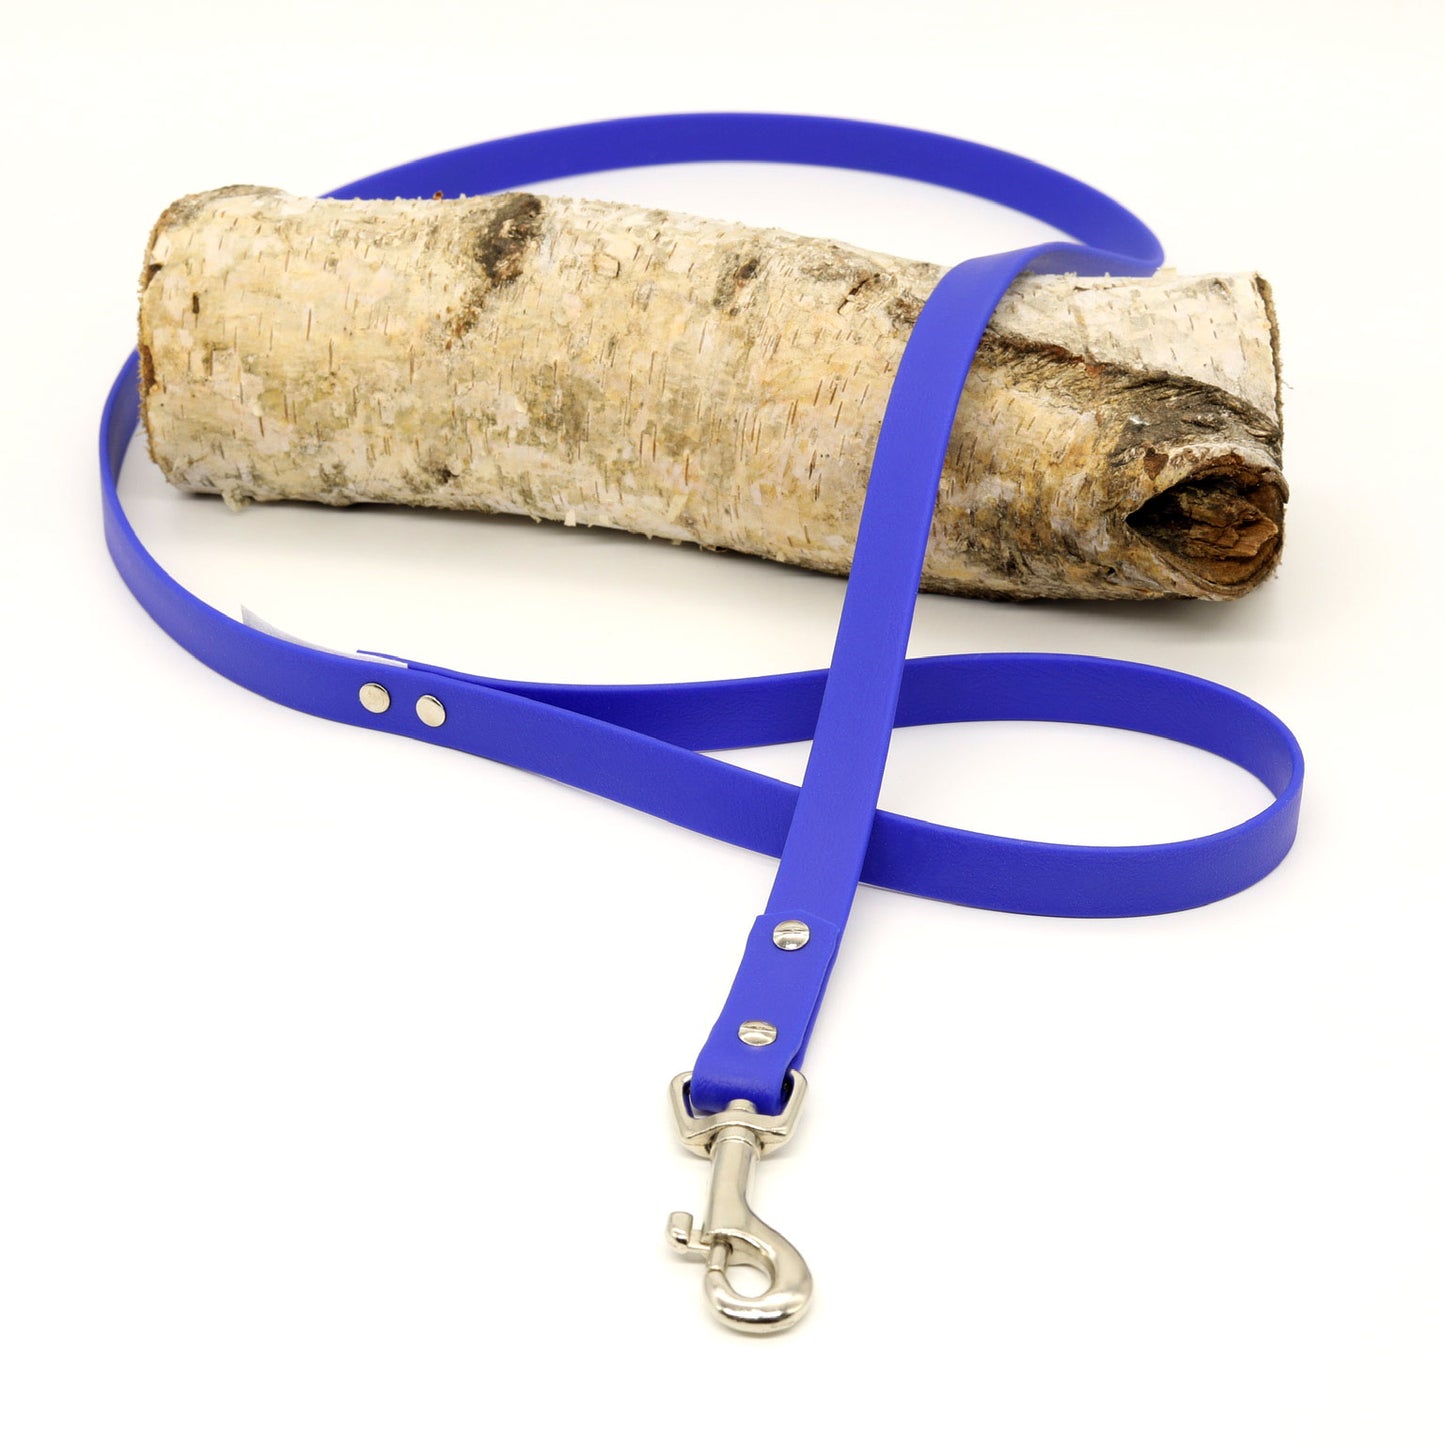 Hundeleine aus Biothane in blau mit silbernen Metallelementen handgefertigt von BALU manufaktur